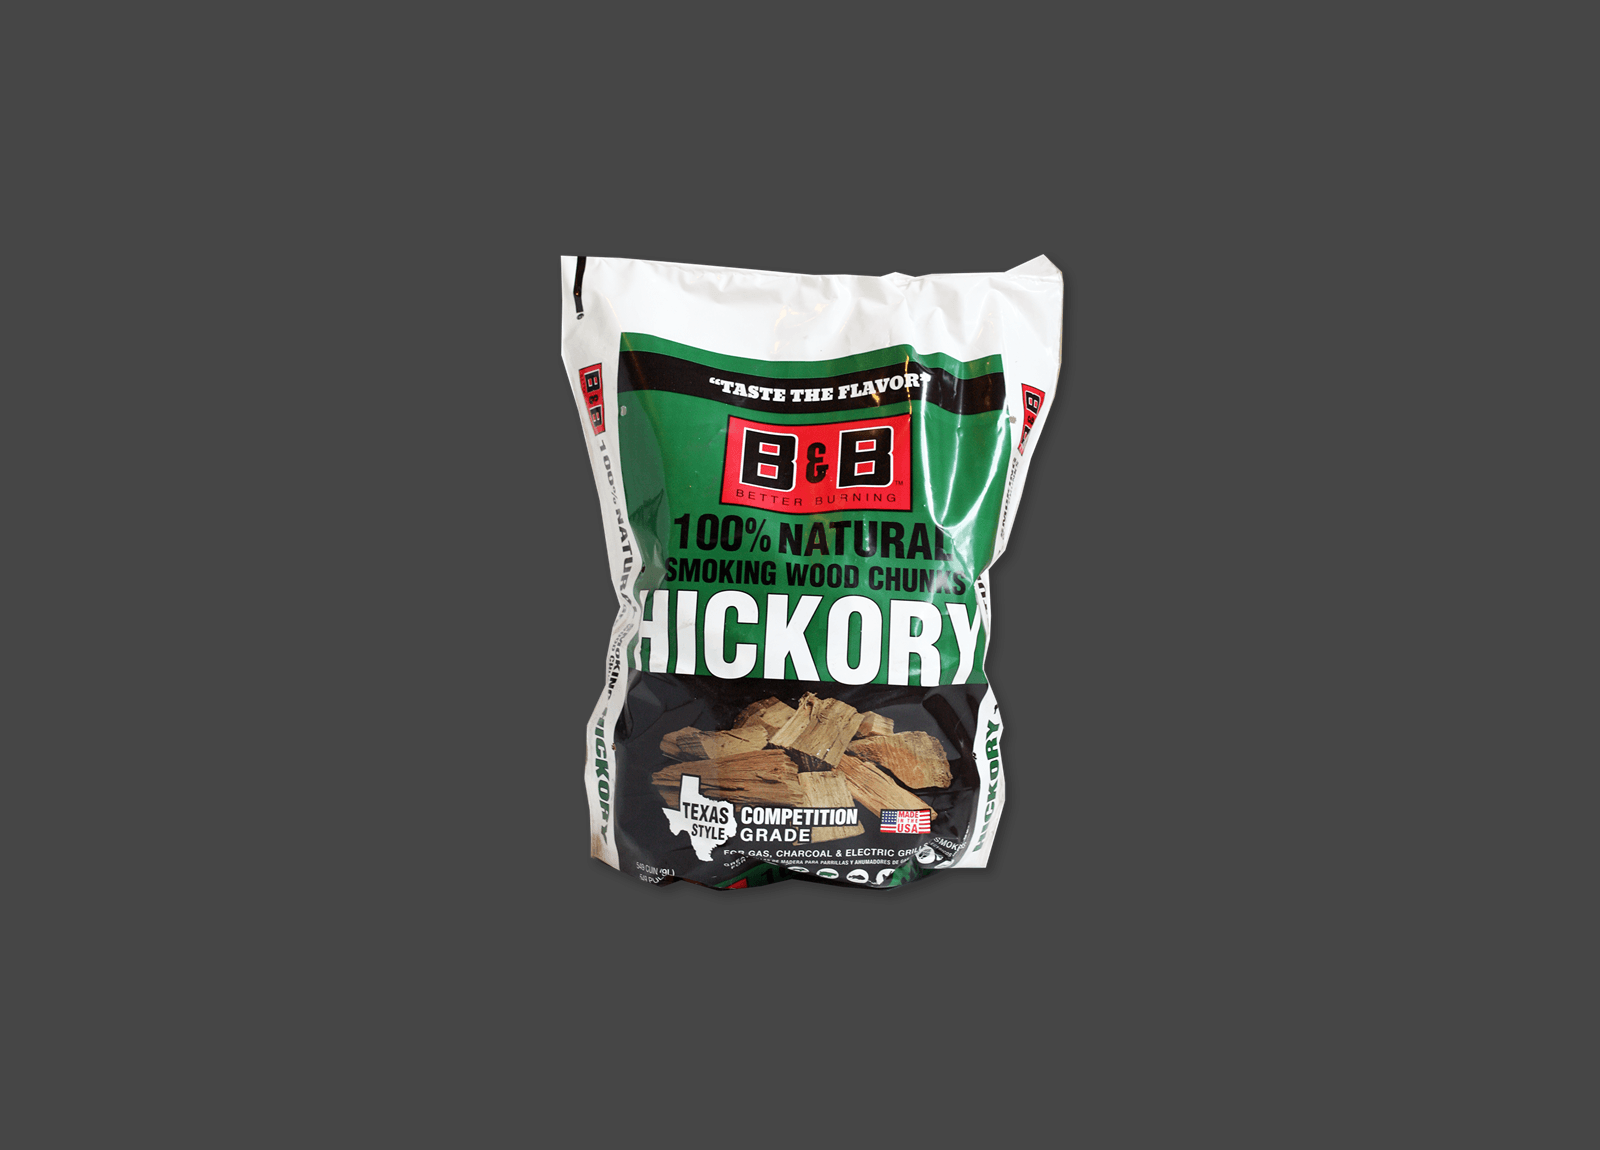 Bag of B&B Hickory Smoking Chips